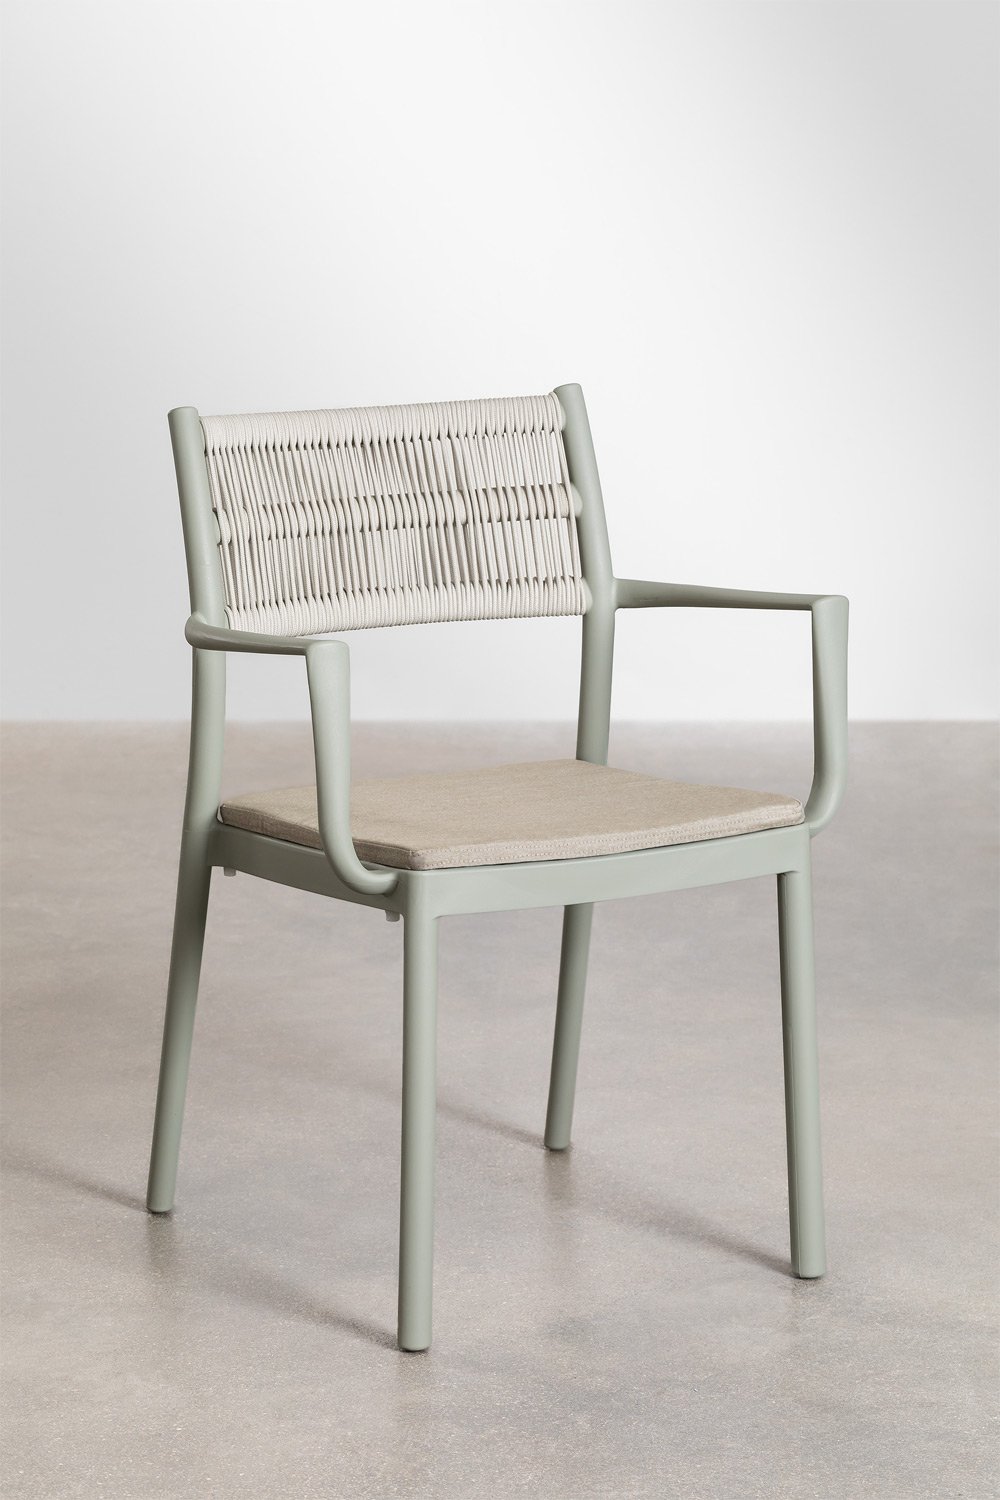 Confezione da 4 sedie da pranzo impilabili con braccioli Favila, immagine della galleria 1